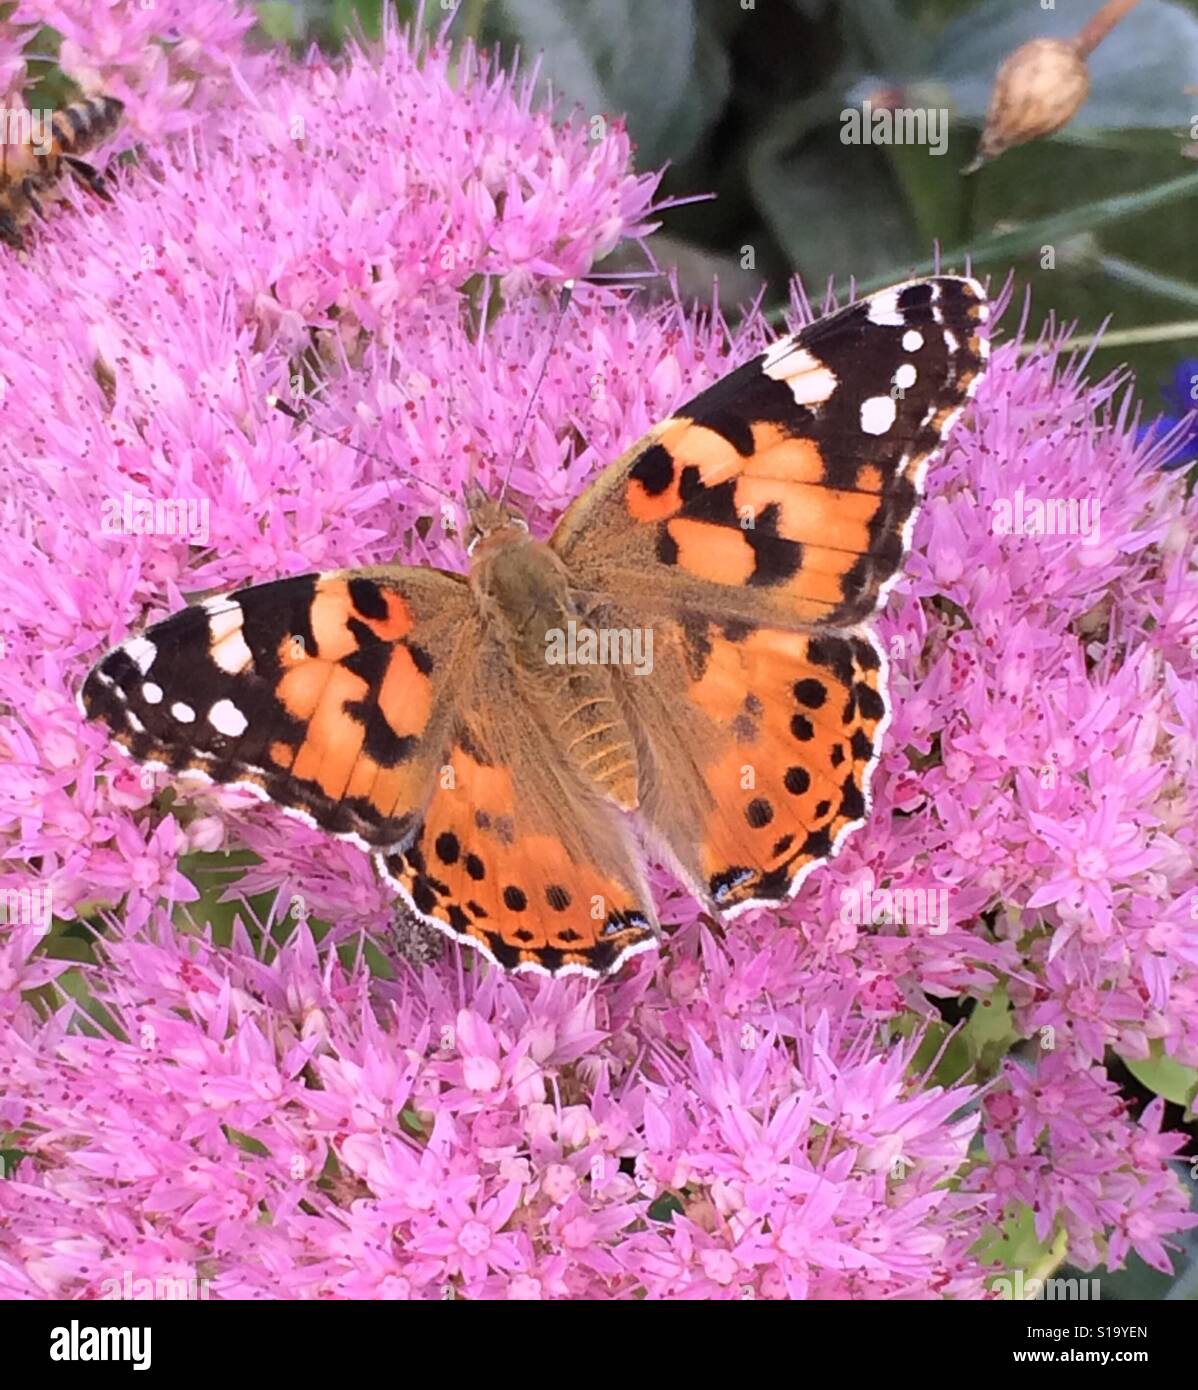 Distelfalter Schmetterling Stockfoto